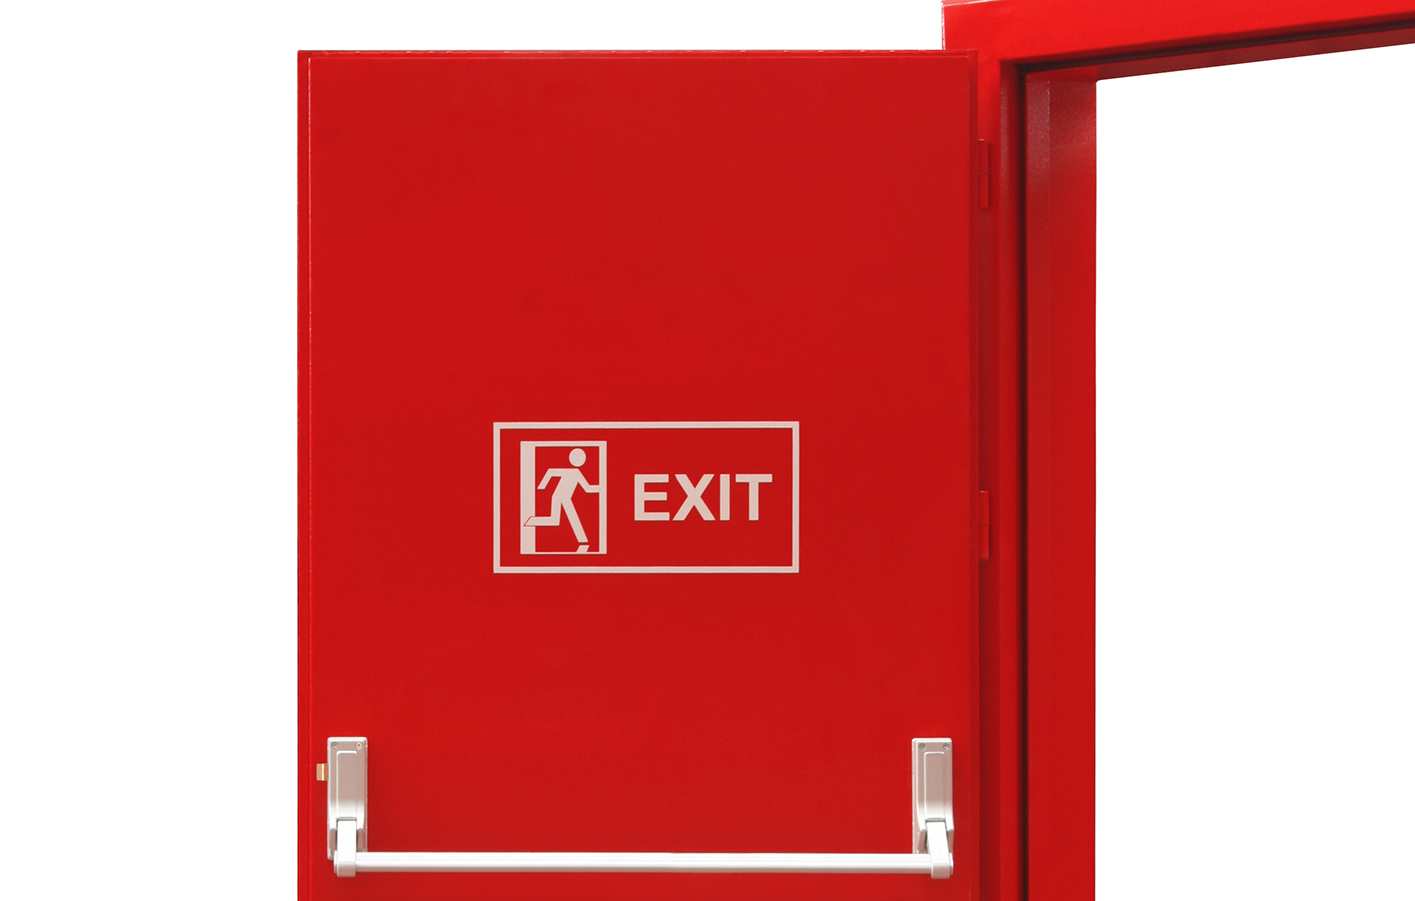 Ausschnitt rote Brandschutztür mit Exit-Zeichen